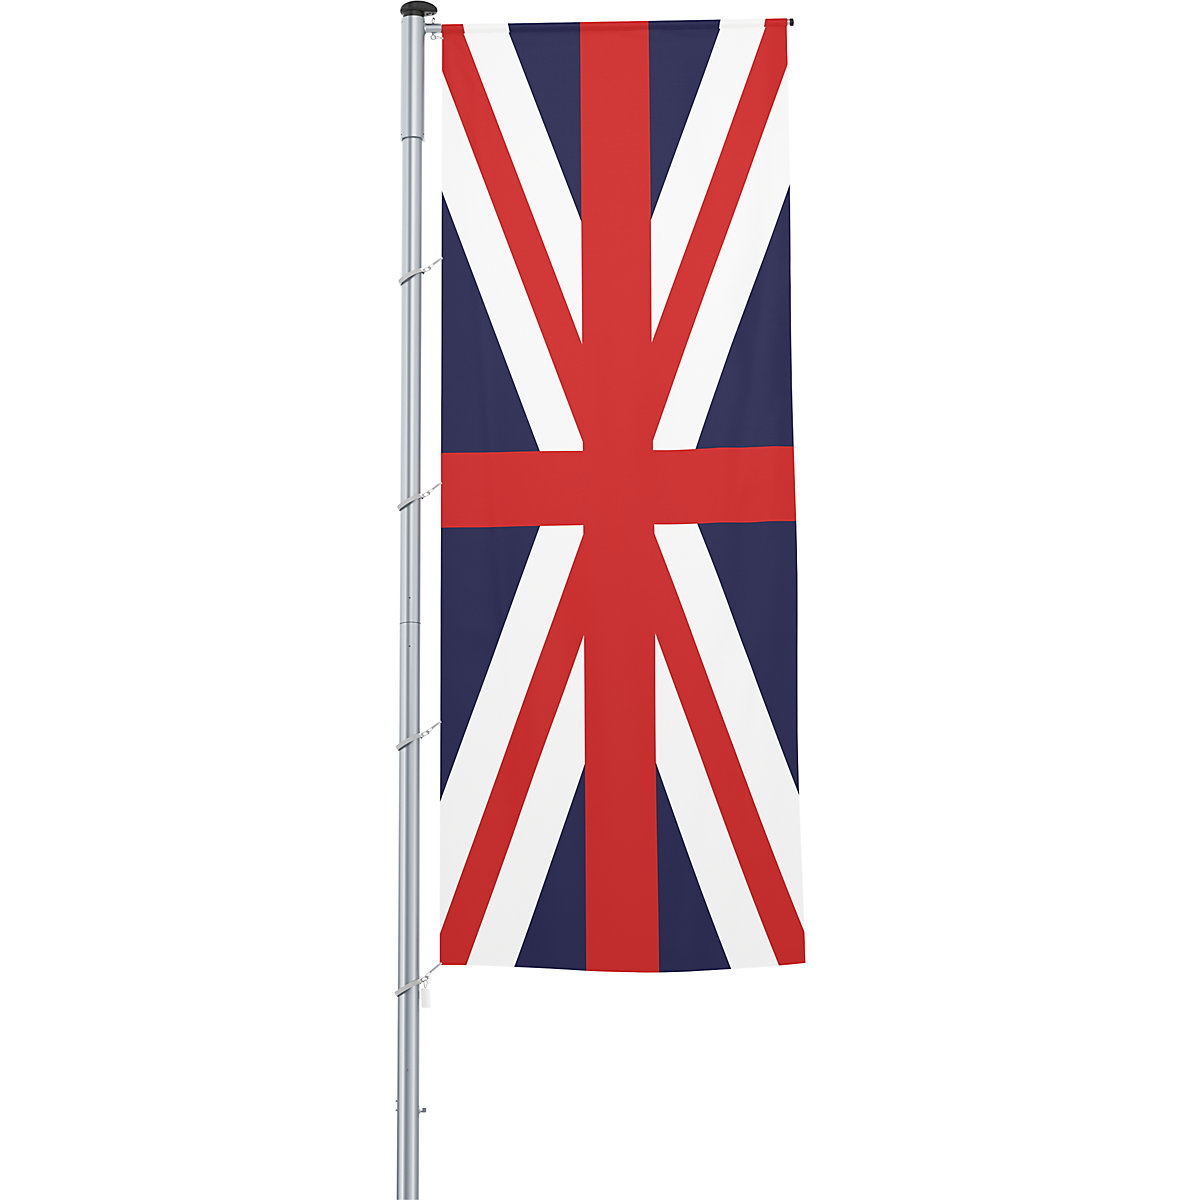 Vlajka na pozdĺžne upevnenie na stožiar/národná vlajka – Mannus, formát 1,2 x 3 m, Veľká Británia-22